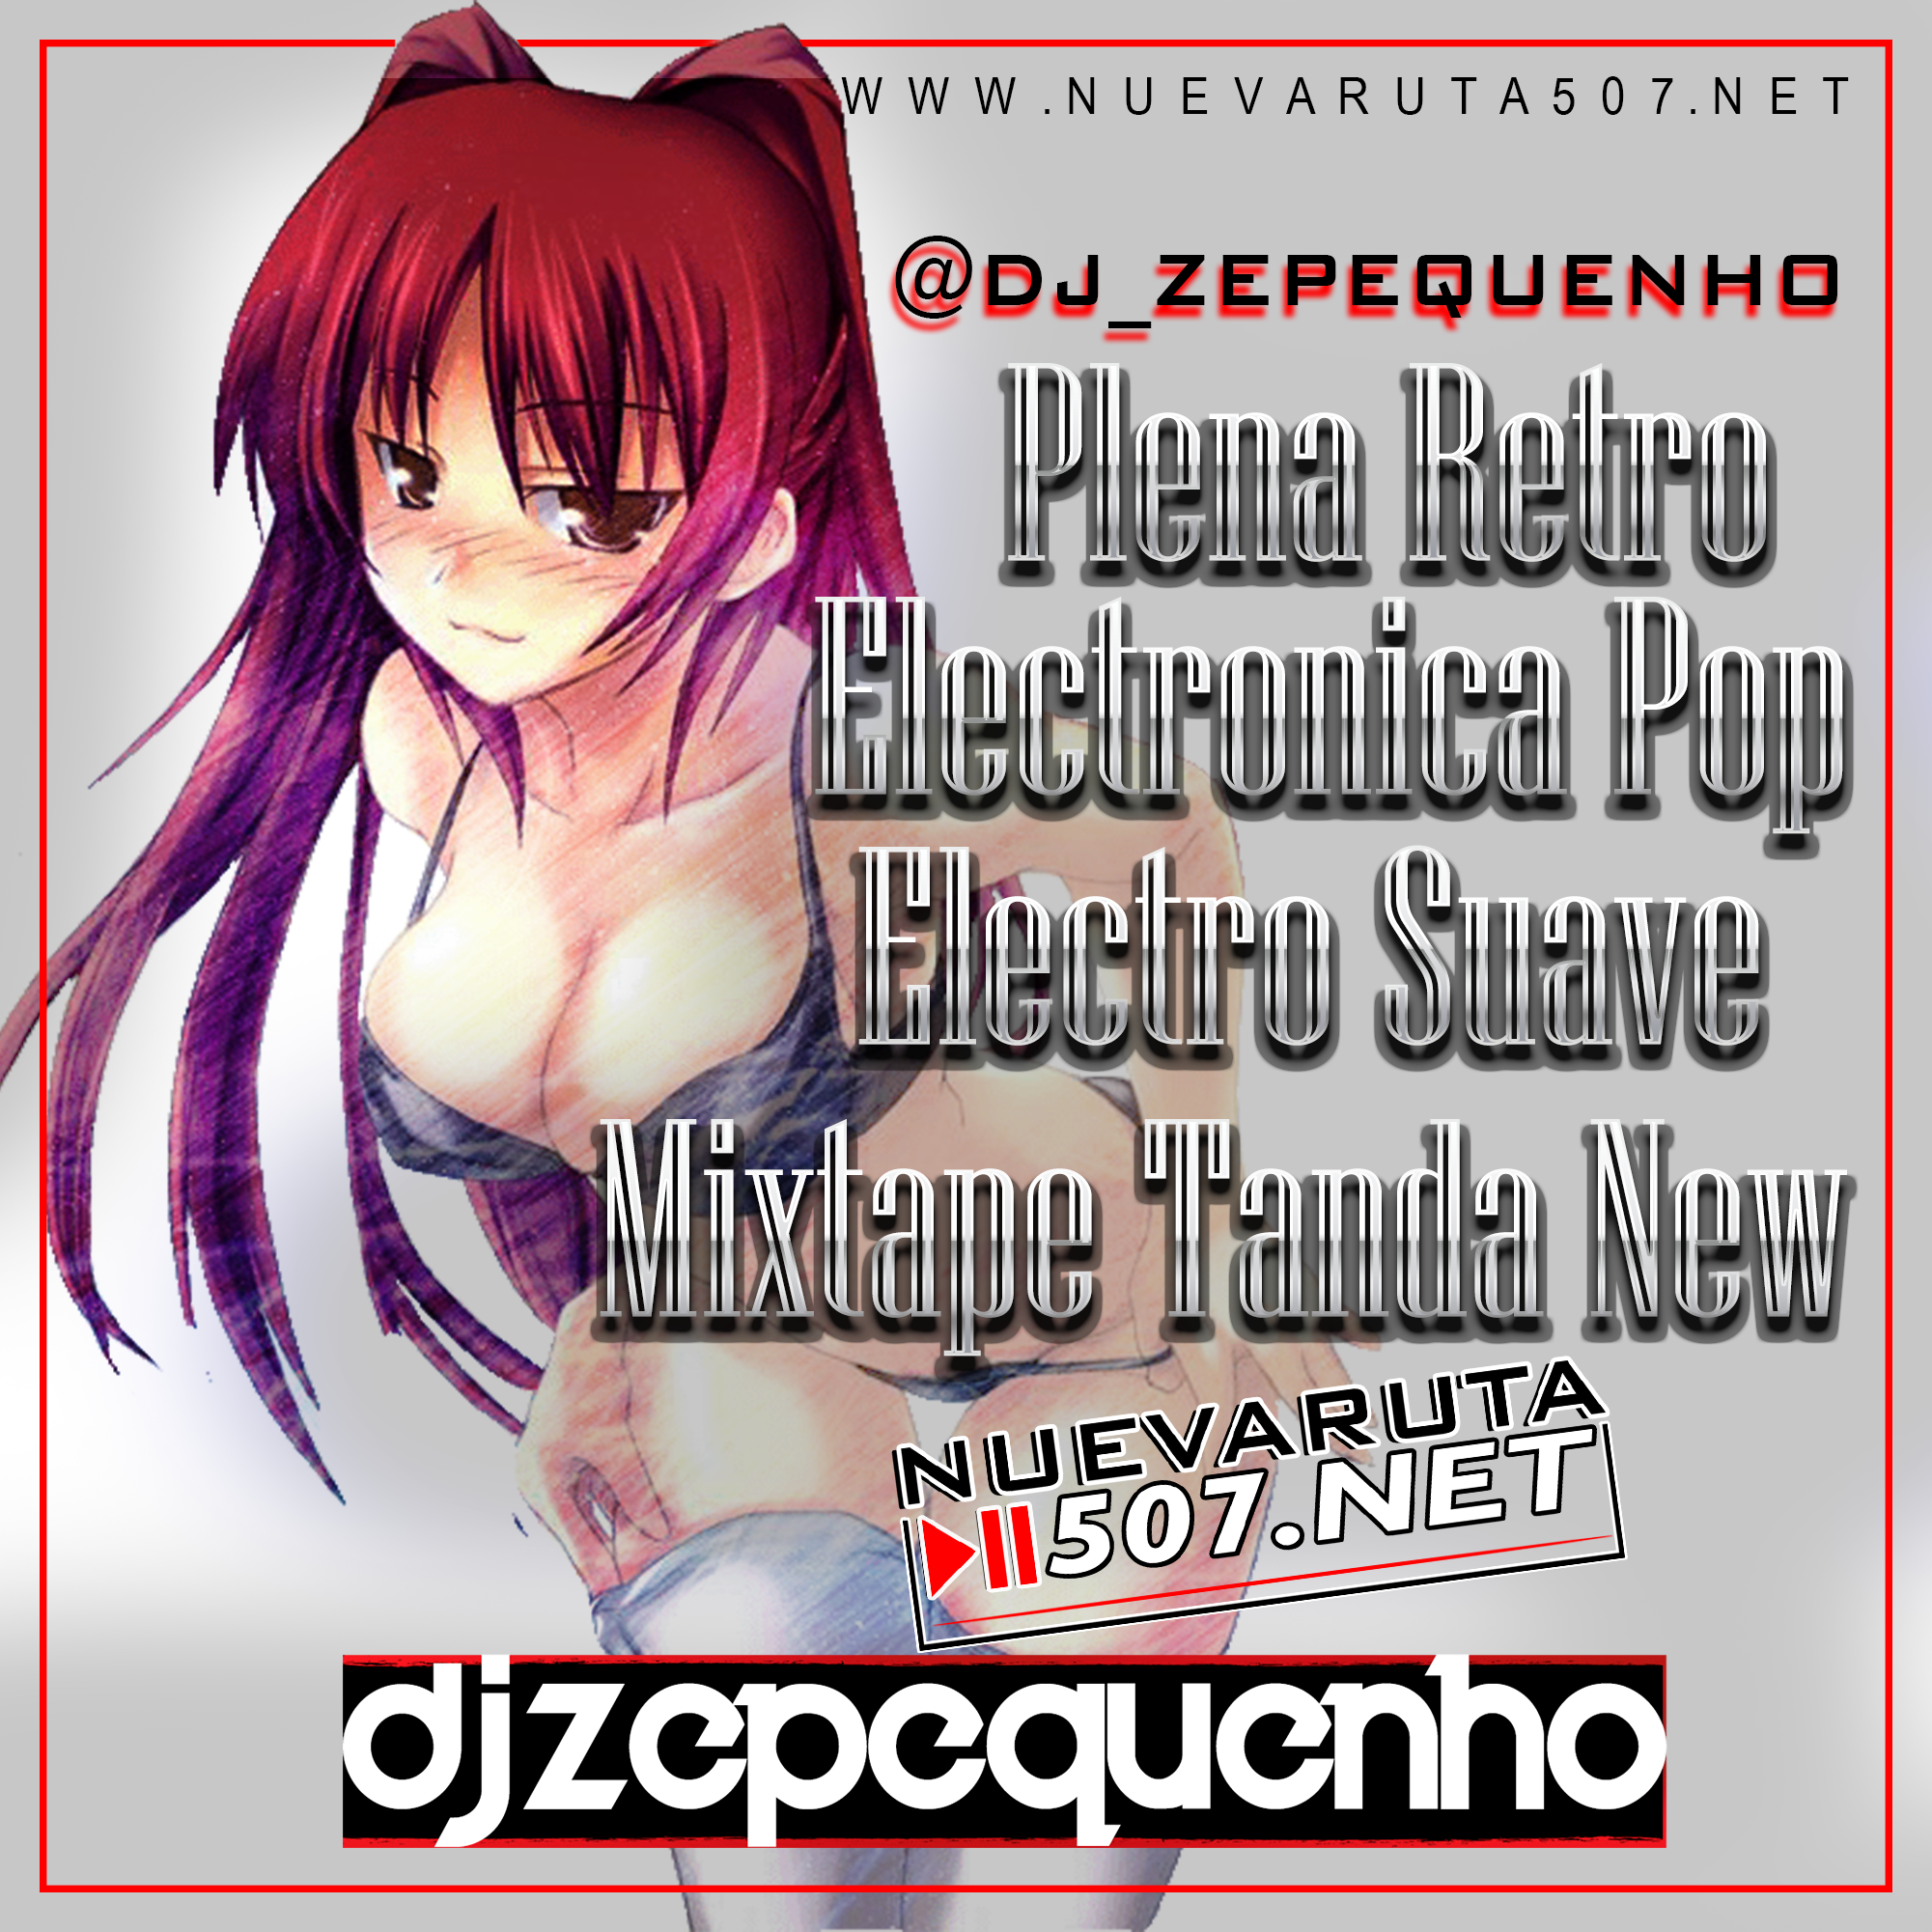 DJ Zepequenho - Electro Suave Mix.mp3